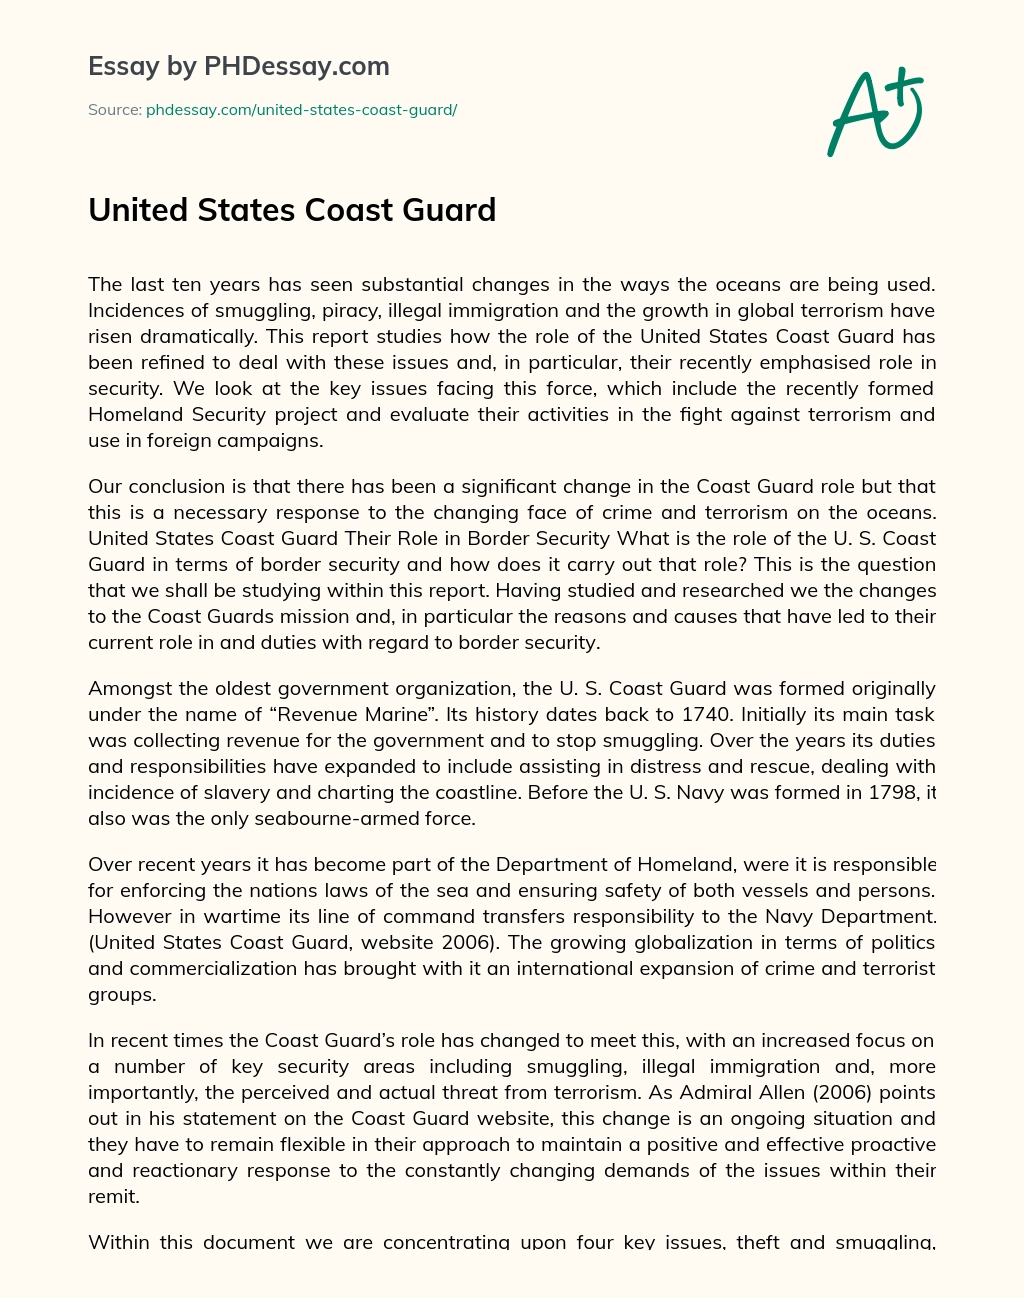 United States Coast Guard essay